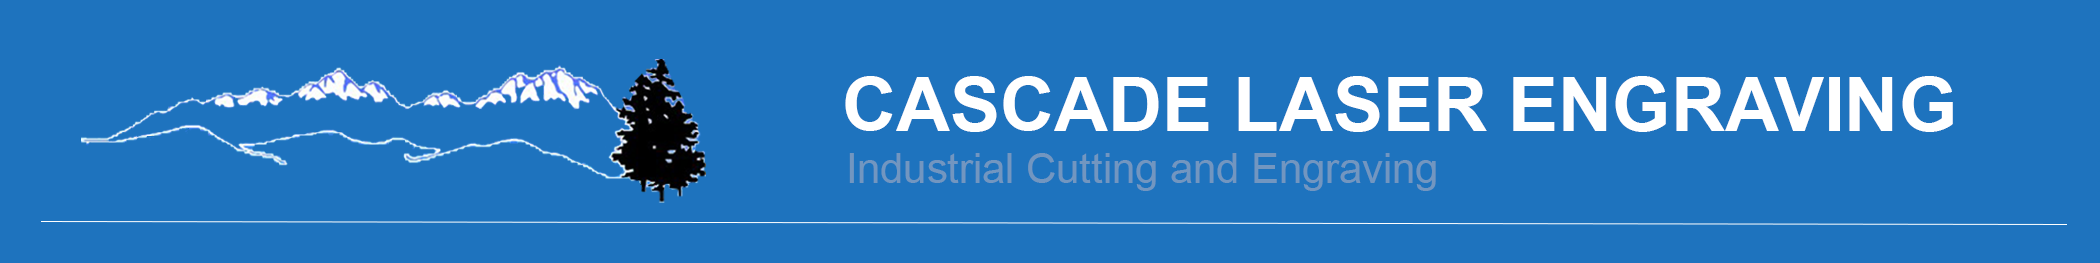 Cascade Laser Engraving Logo